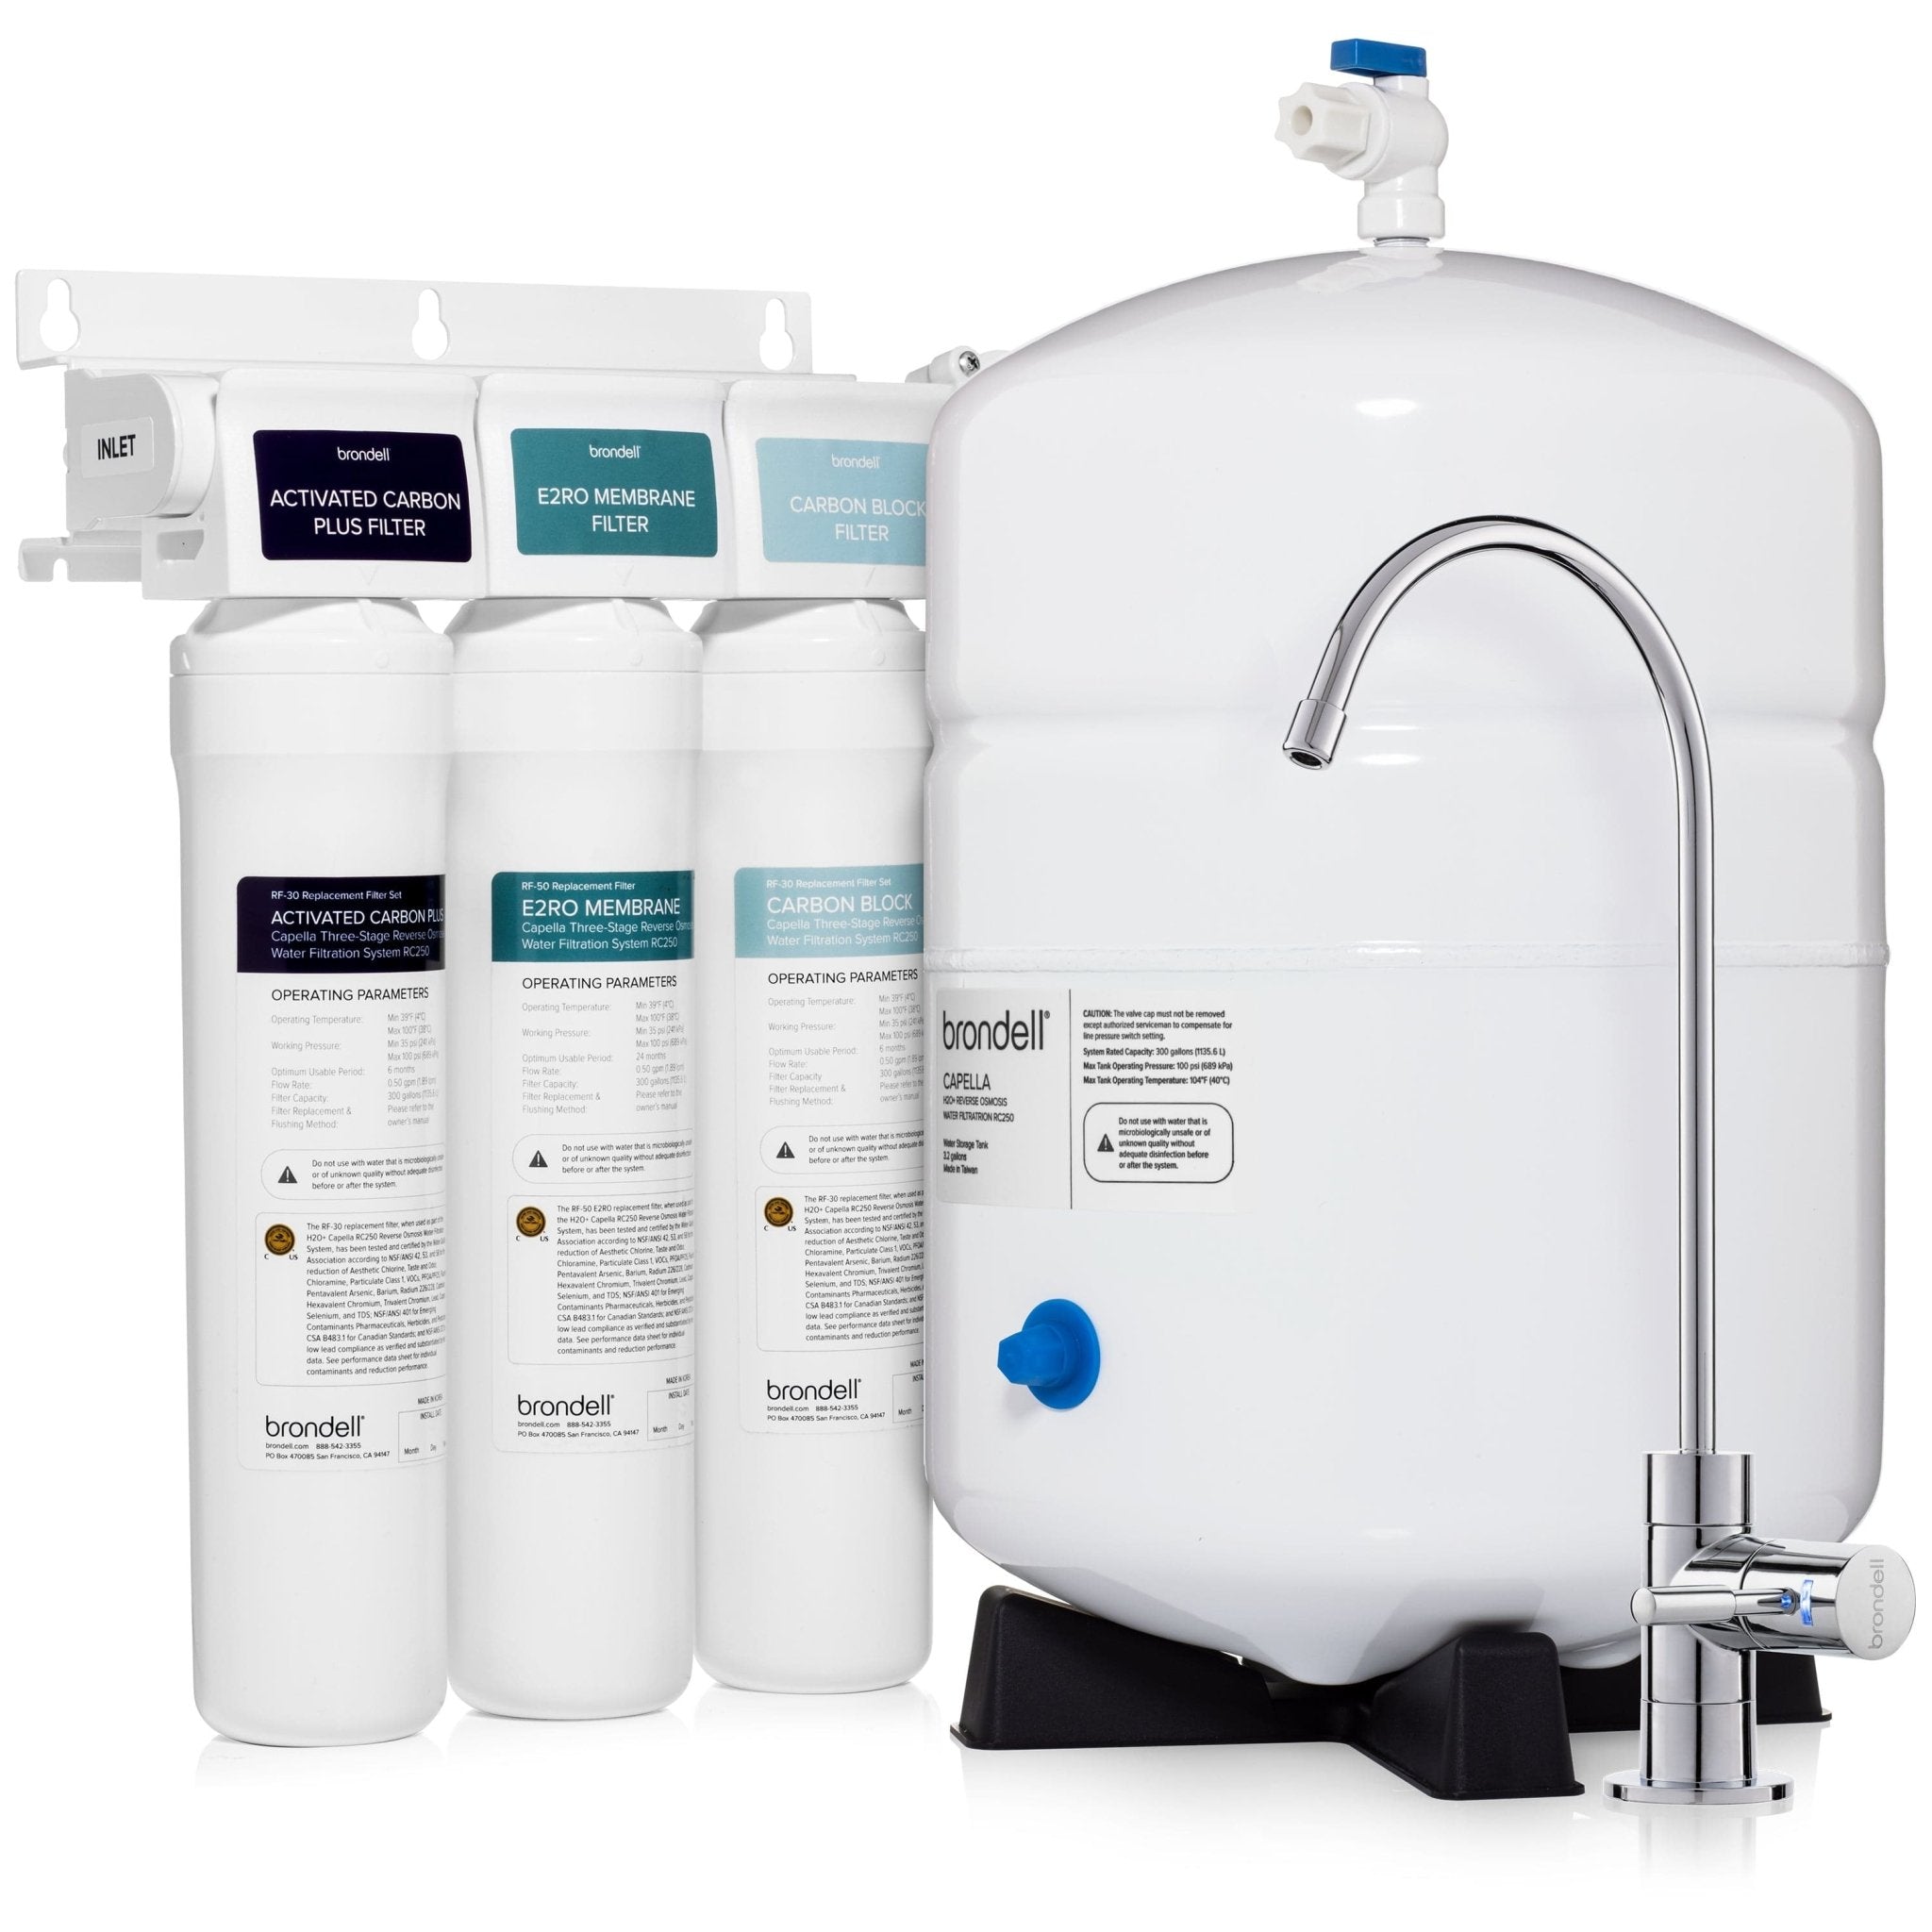 H2O+ Capella RC250 Reverse Osmosis Water Filtration System - Molaix - Molaix819911013746H2O+ UNDERCOUNTERRC250